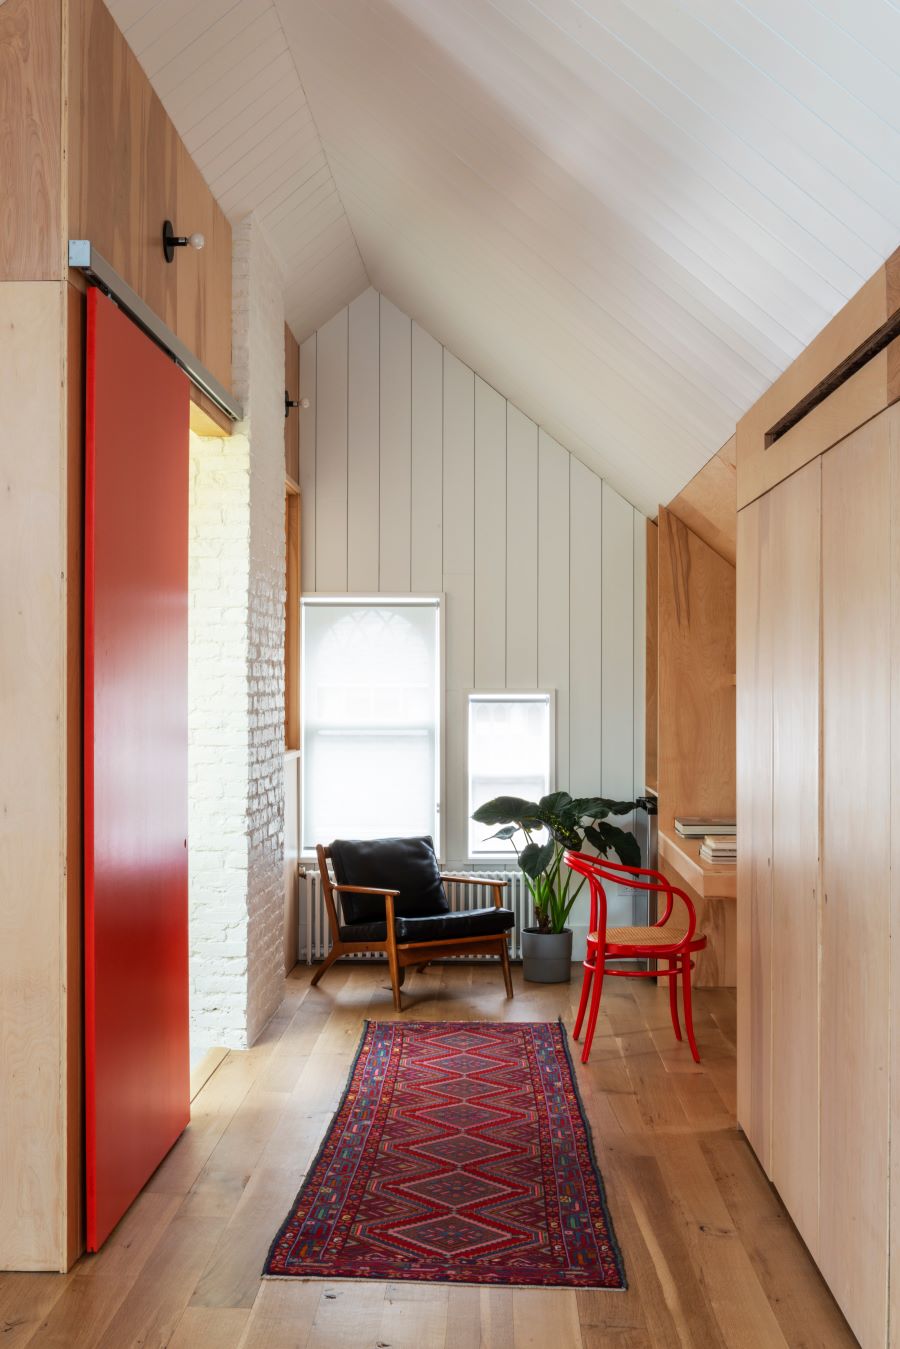 Časť interiéru so stoličkami, kobercom a červenými posuvnými dverami.